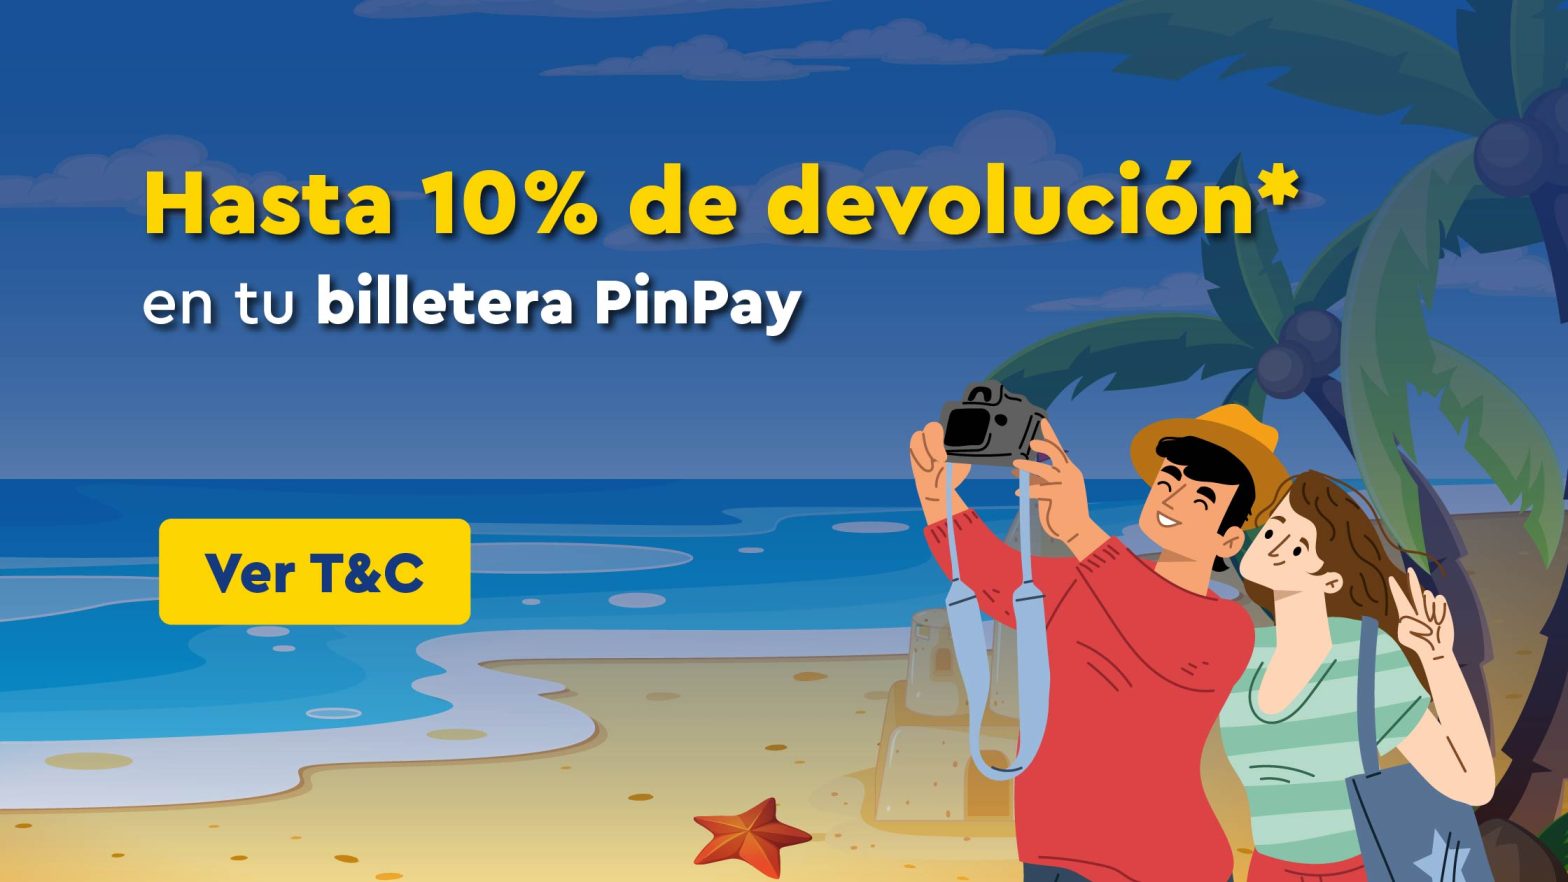 Compra tu pasaje y obtén hasta 10% de devolución en PinPay